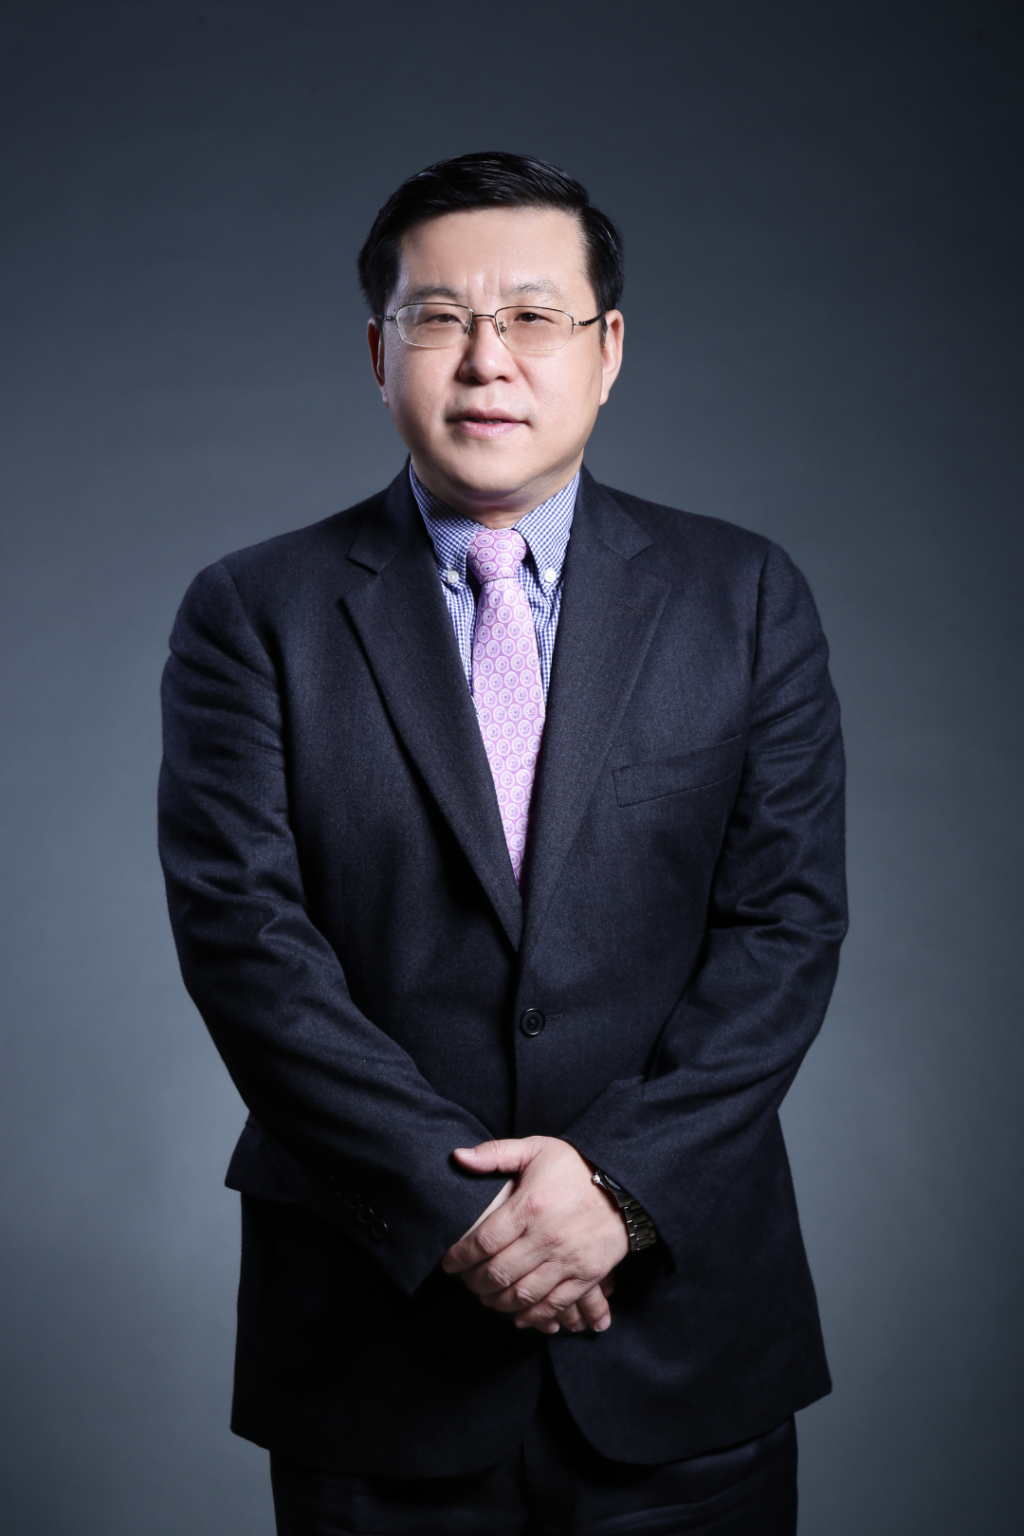 姜辉教授履新北京大学第一医院党委书记